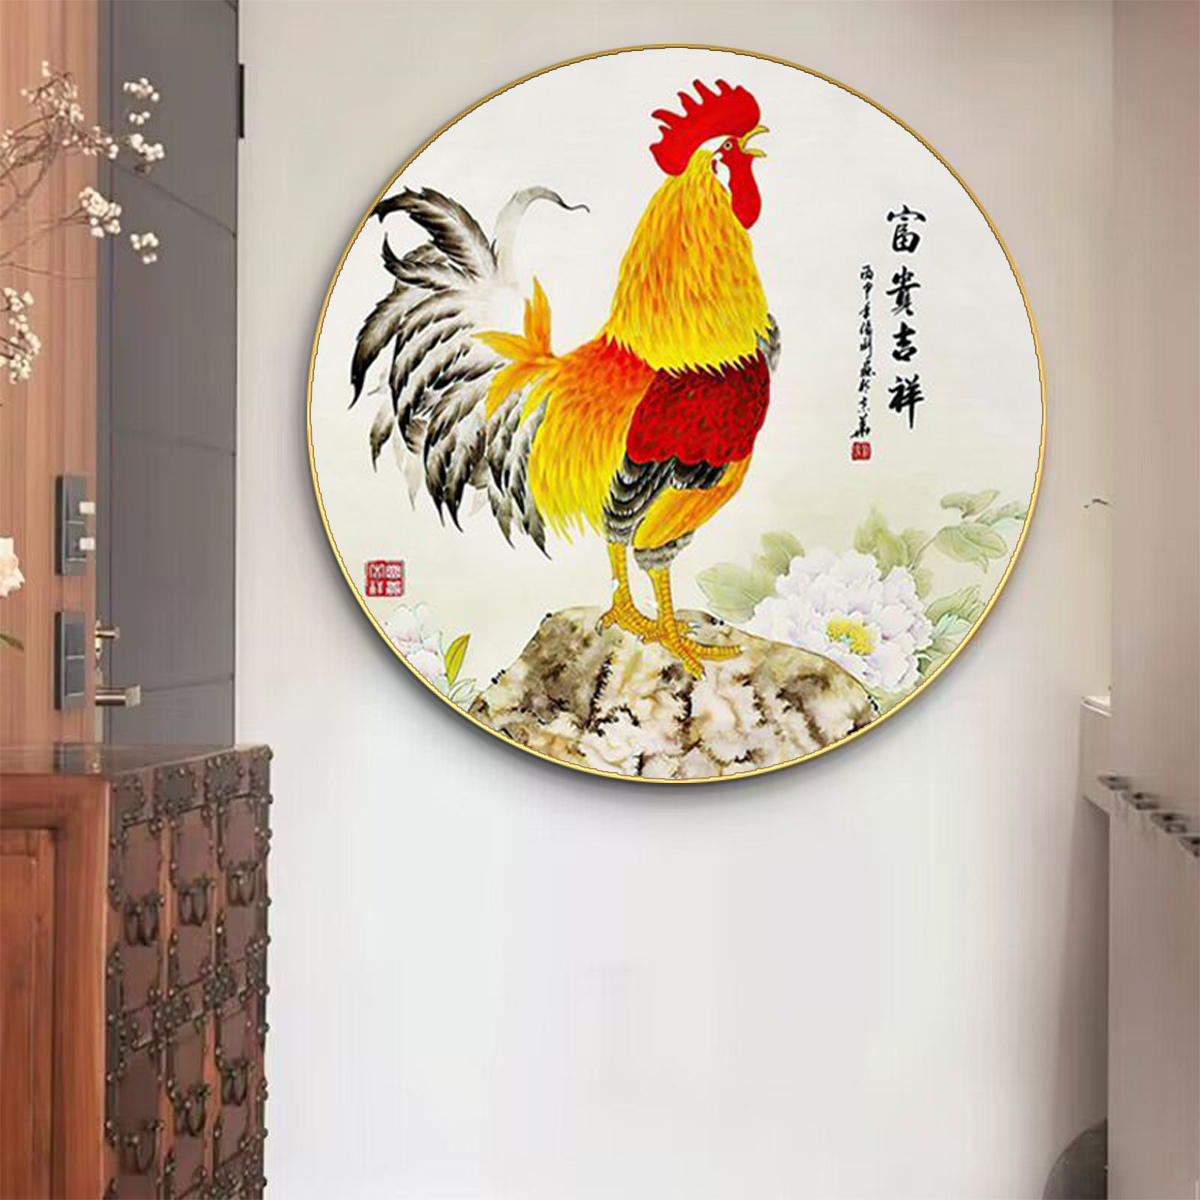 金鸡报晓玄关装饰画新中式圆形大公鸡挂画雄鸡图客厅餐厅风水壁画